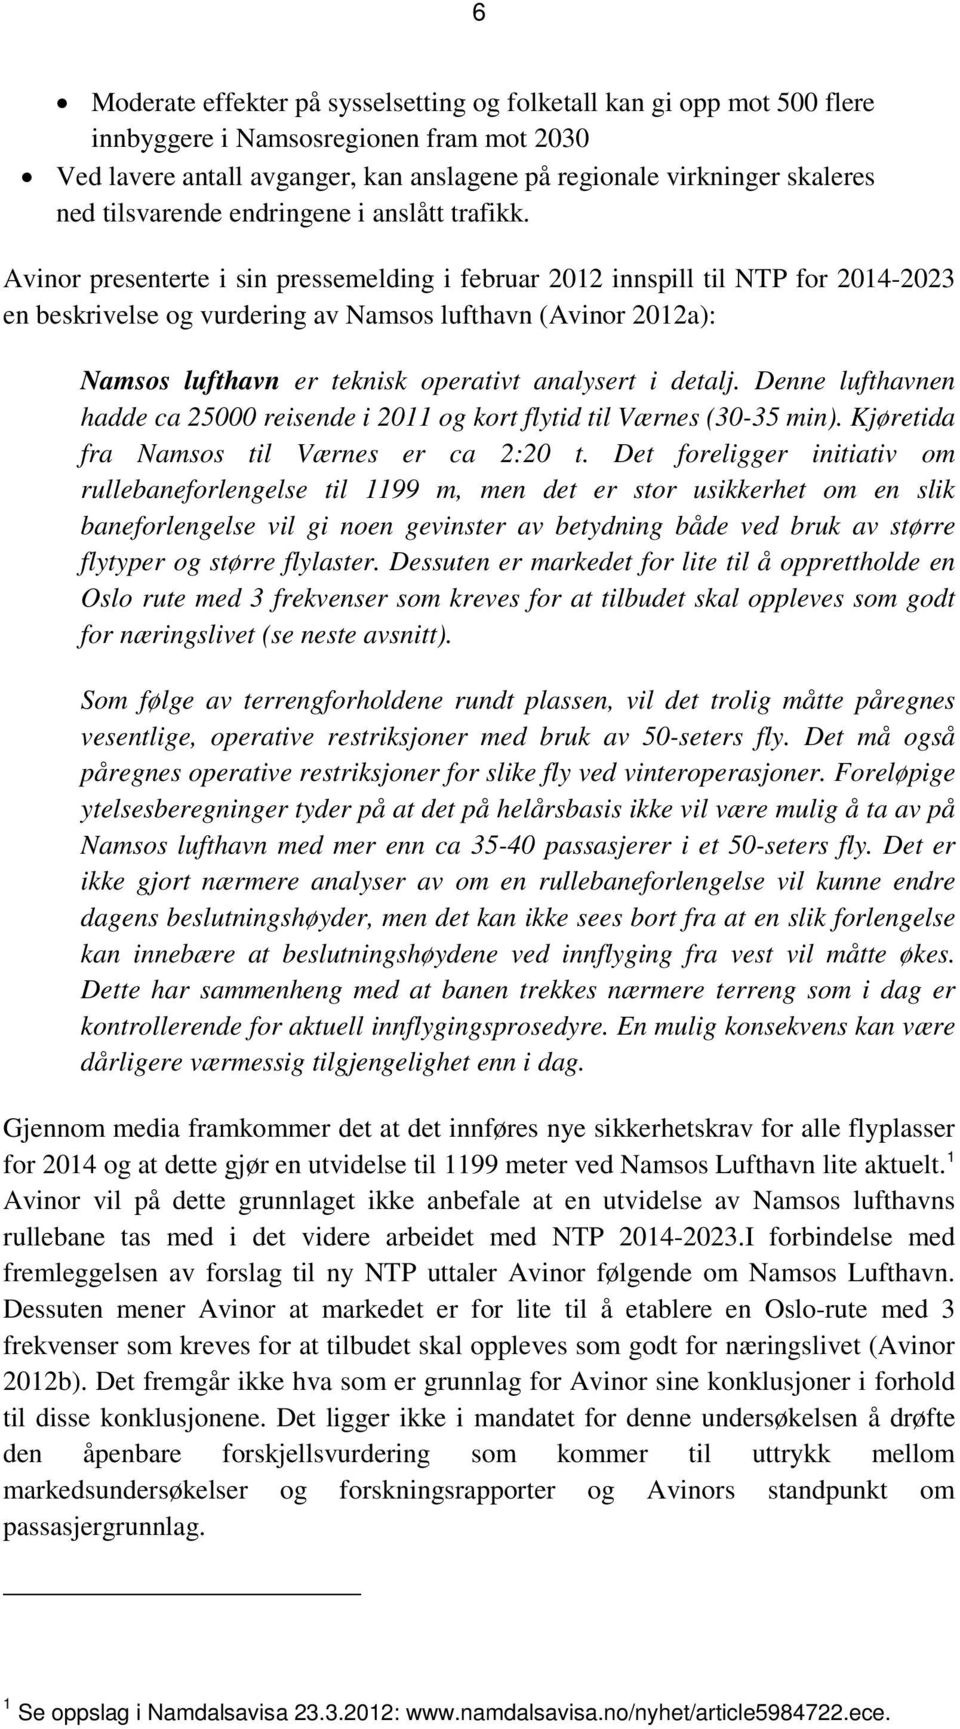 Avinor presenterte i sin pressemelding i februar 2012 innspill til NTP for 2014-2023 en beskrivelse og vurdering av Namsos lufthavn (Avinor 2012a): Namsos lufthavn er teknisk operativt analysert i